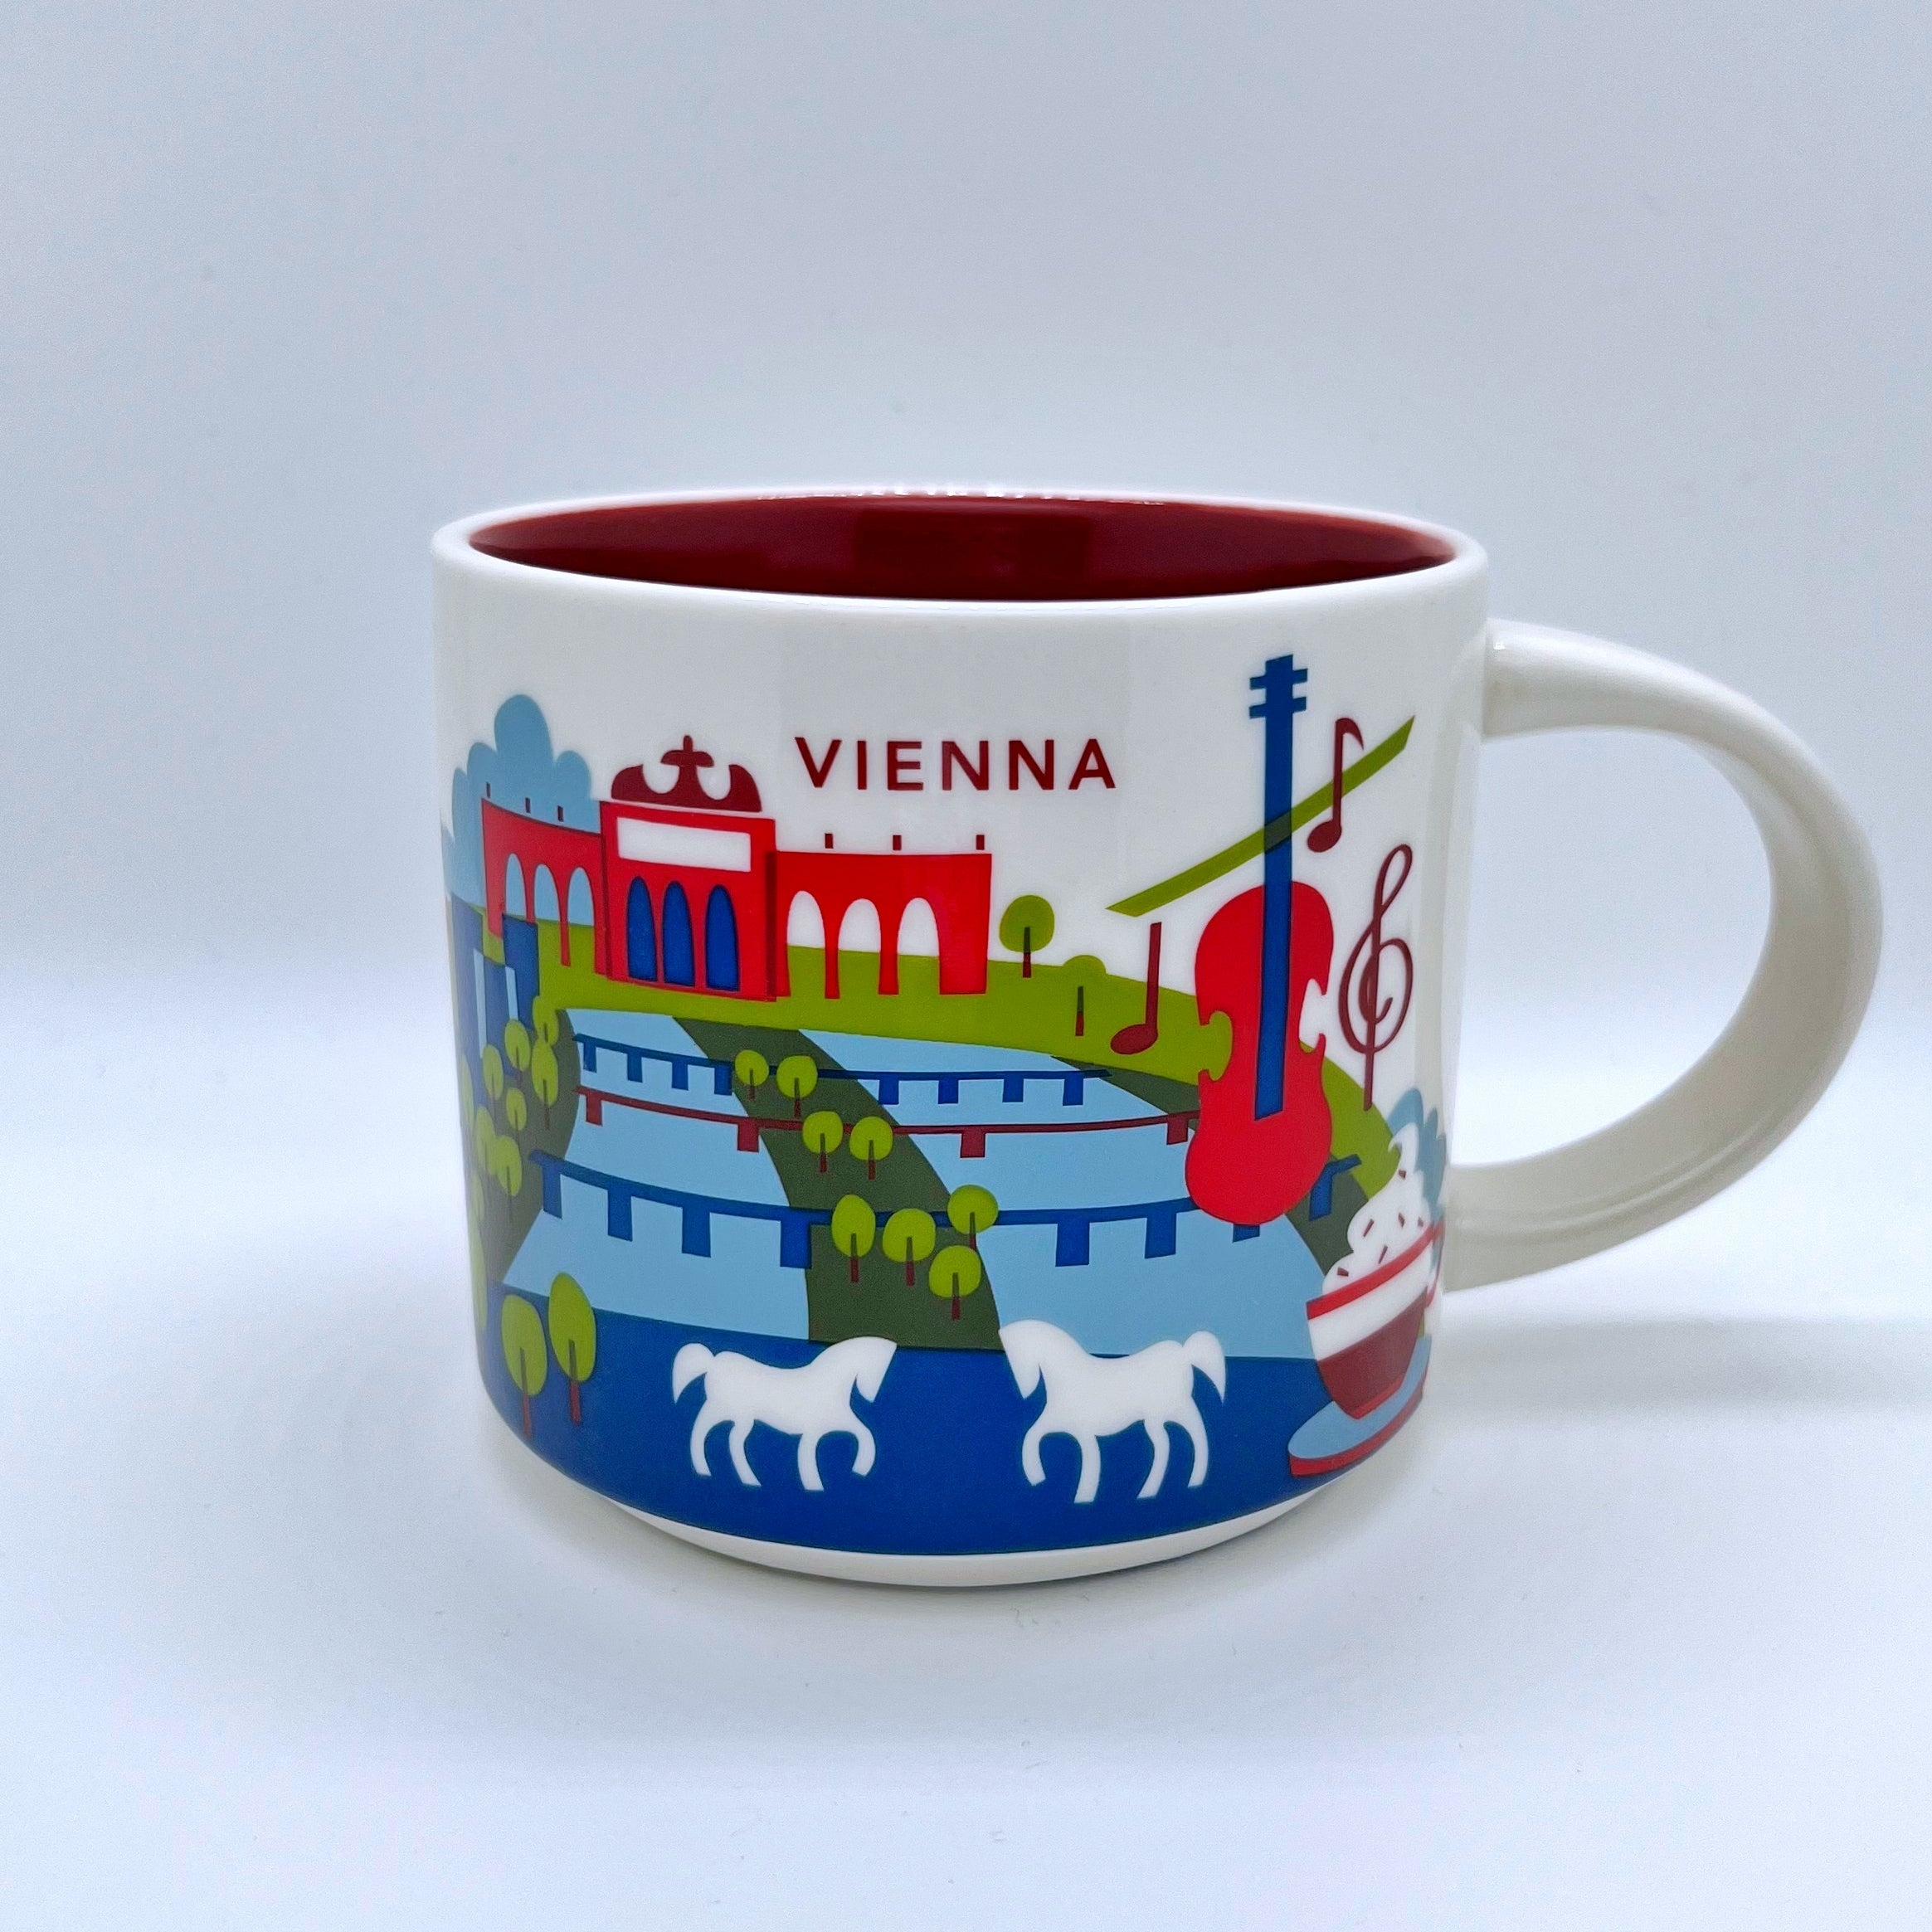 Kaffee Tee und Cappuccino Tasse von Starbucks mit gemalten Bildern aus der Stadt Wien